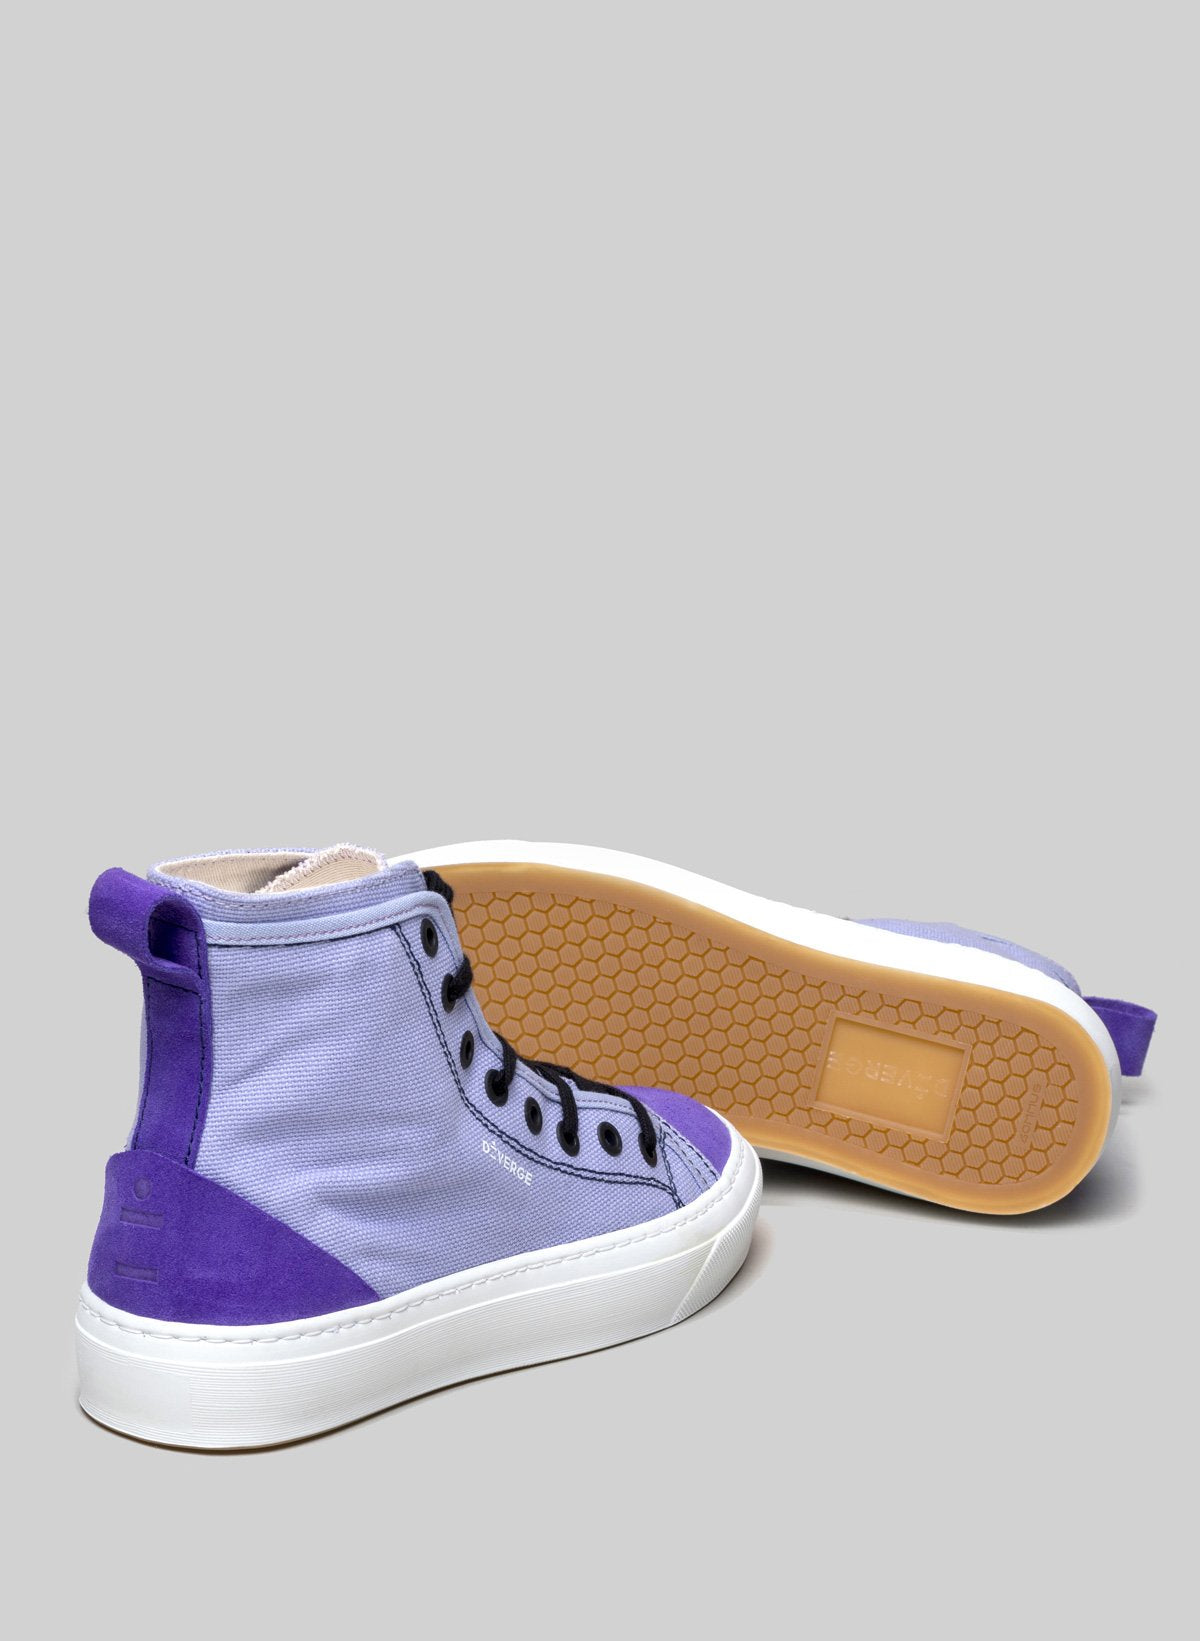 High top morado sneakers de Diverge, promoviendo el impacto social y el calzado personalizado a través del proyecto imagine.